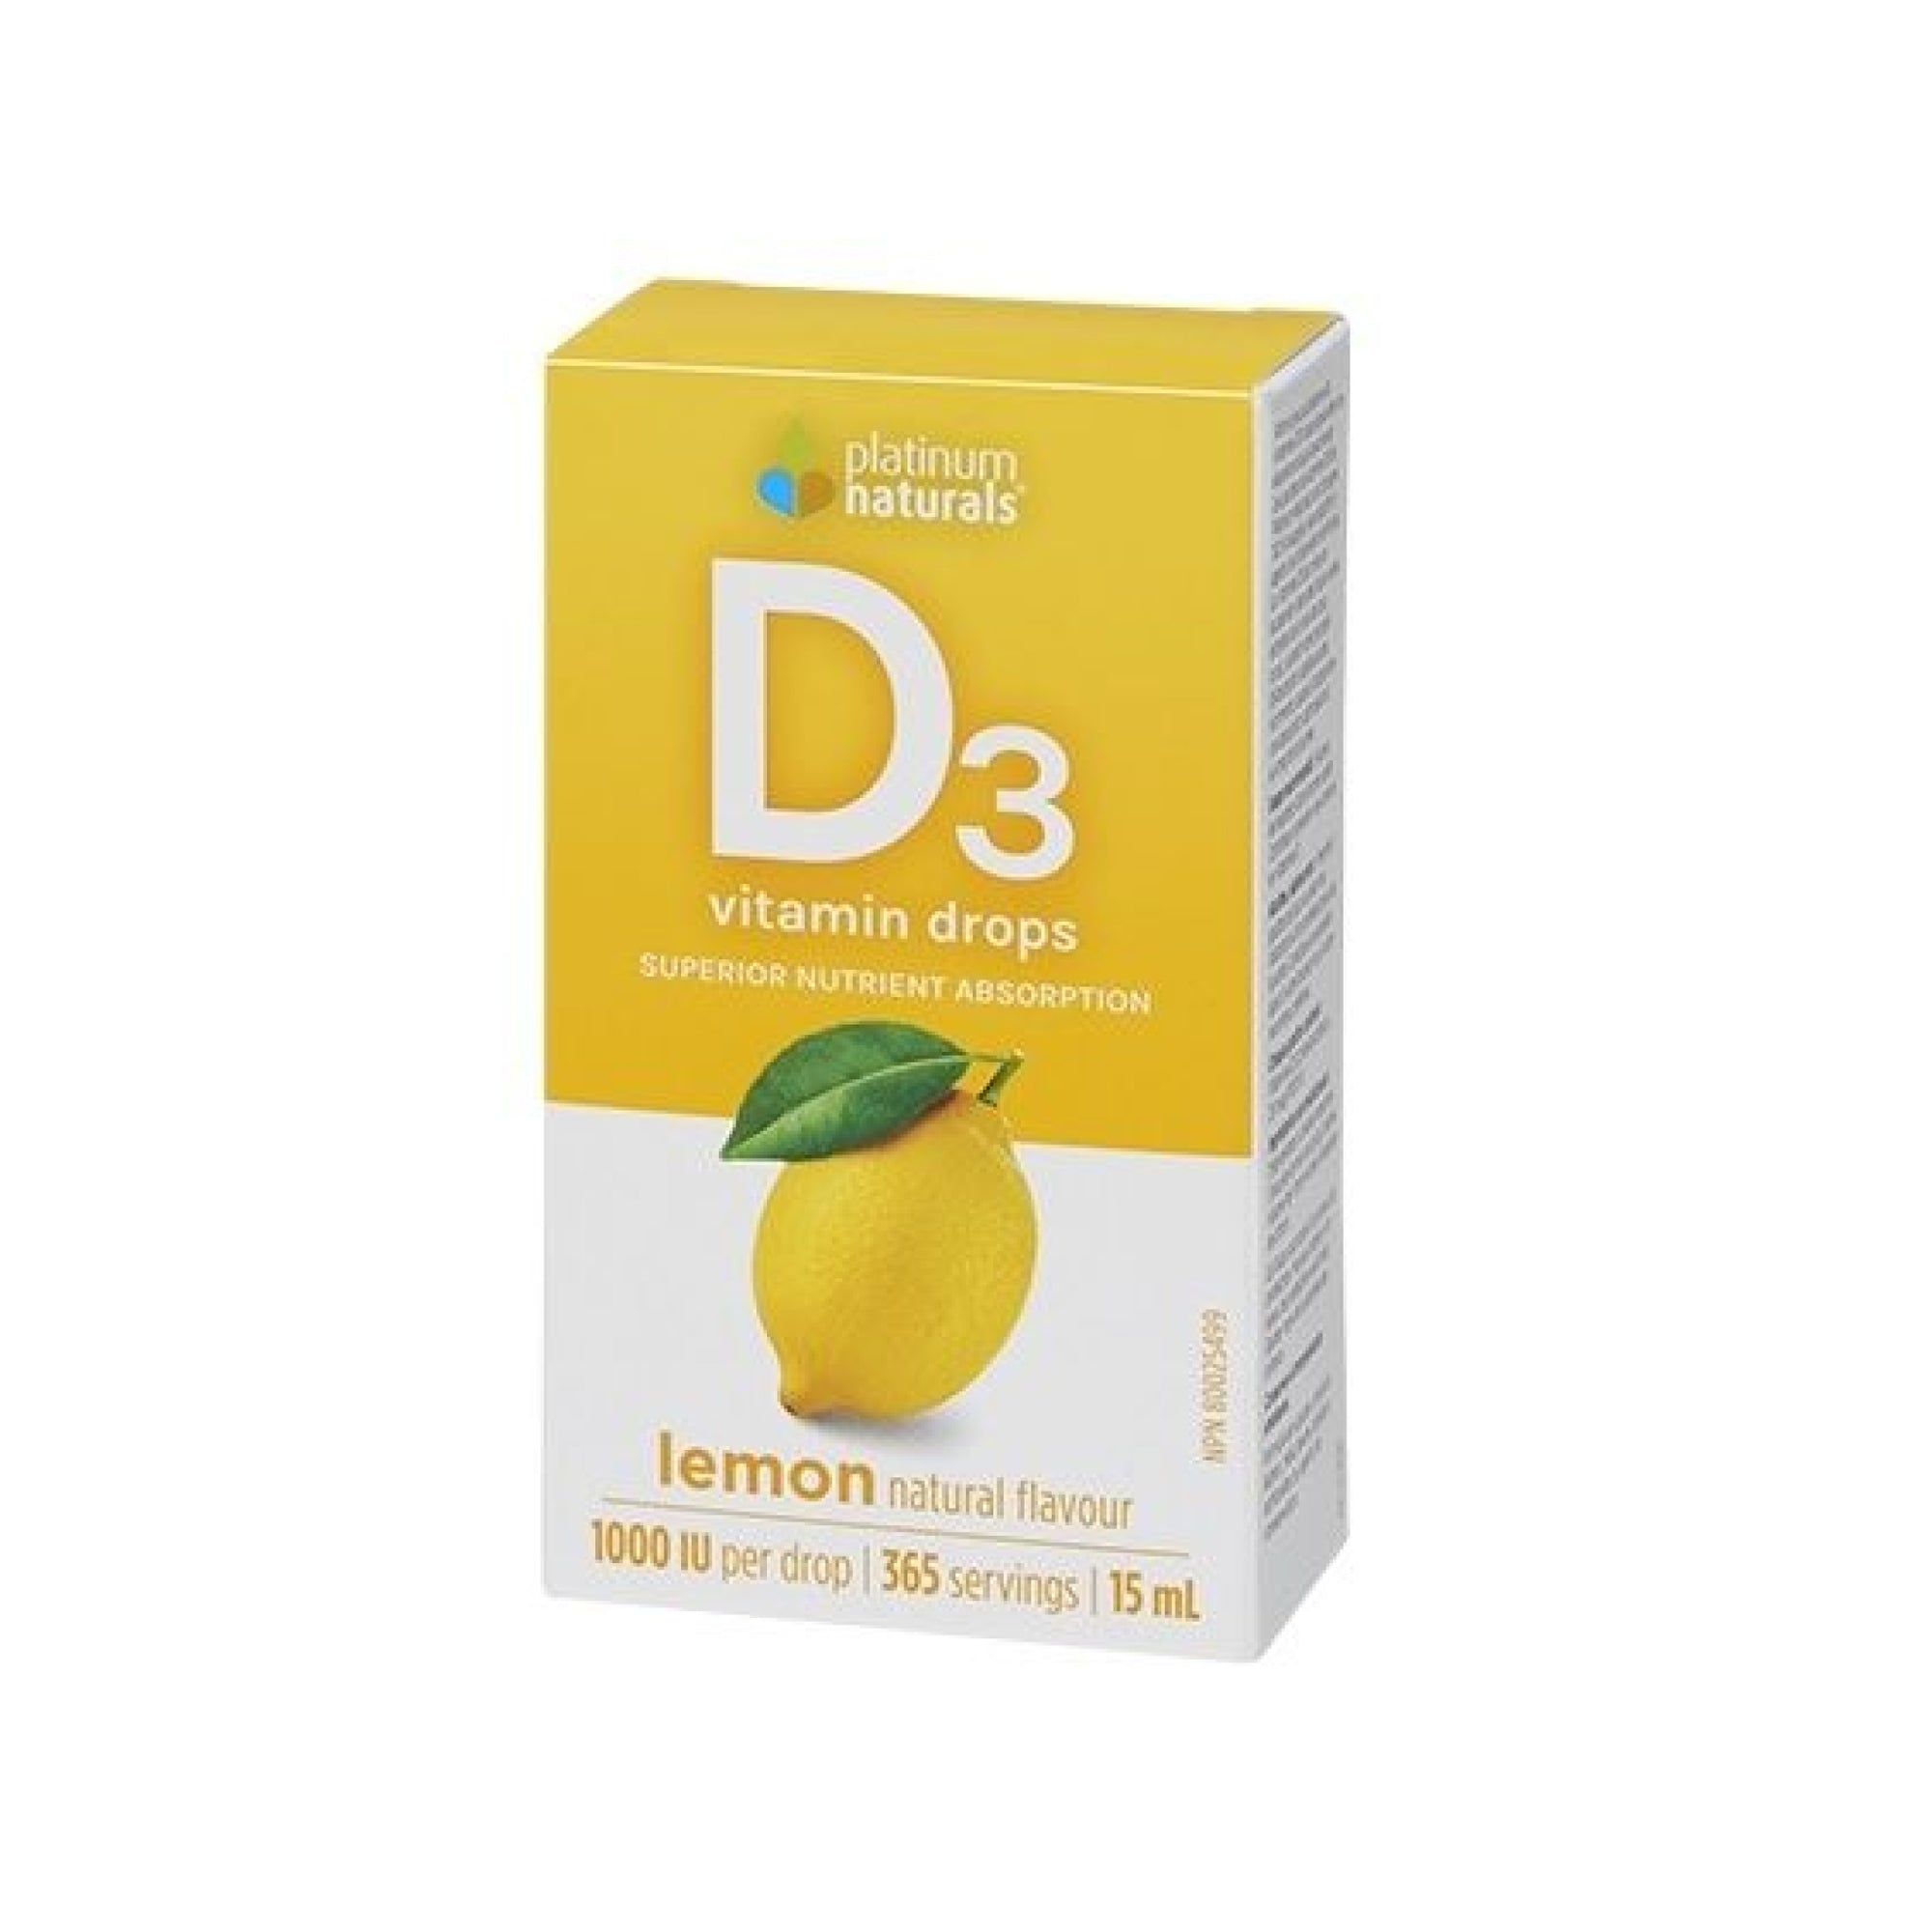 Platinum Naturals Vitamin D3 Drops Lemon Flavour 15mL